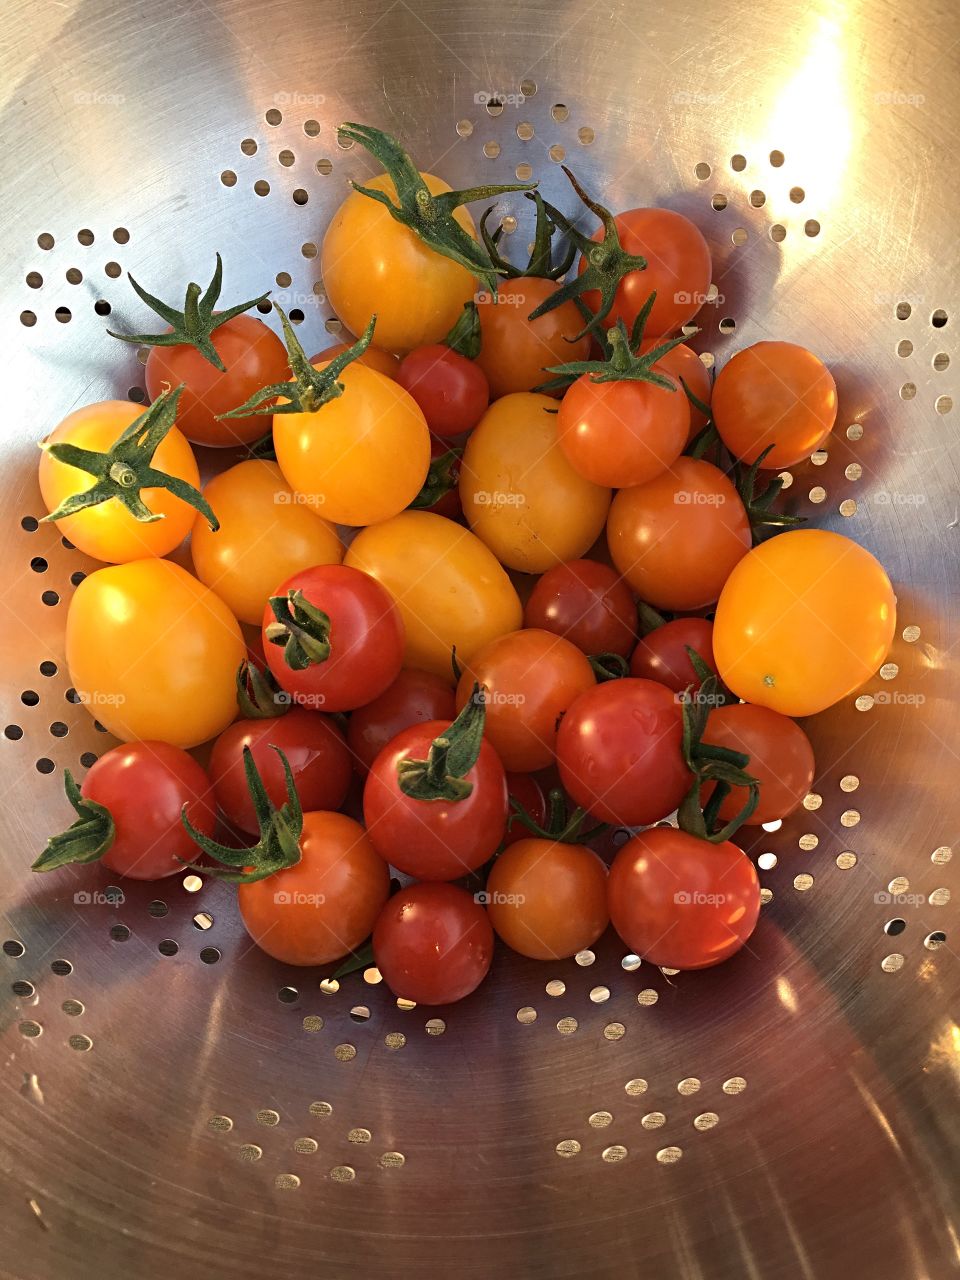 Home grown tomato selection. 